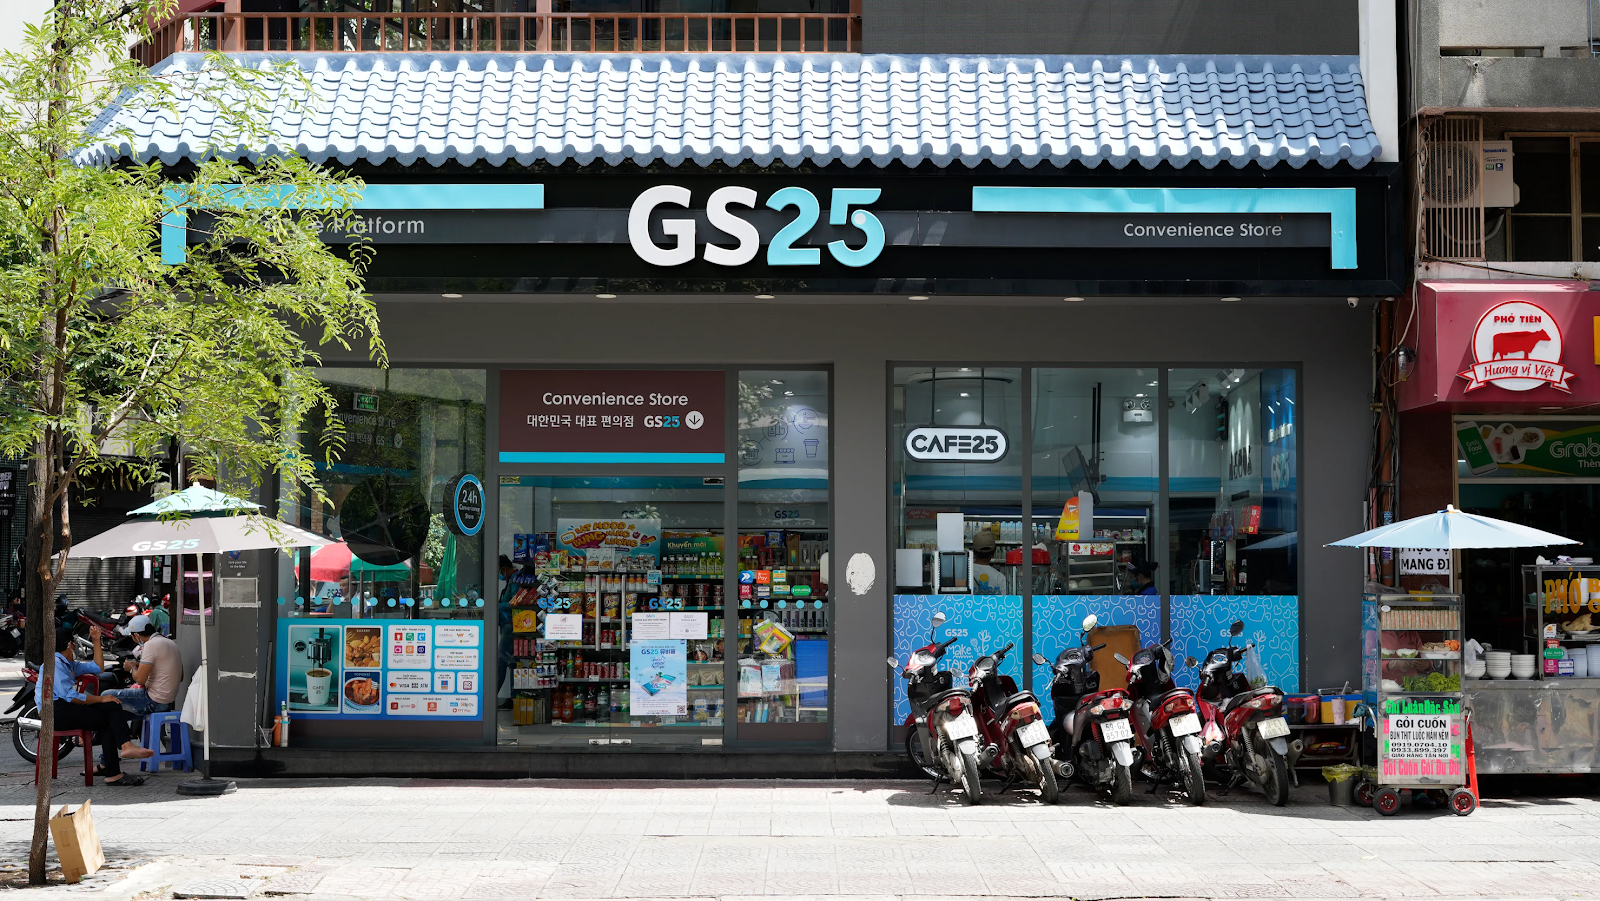 Danh sách cửa hàng gs25 tại Thành phố Hồ Chí Minh